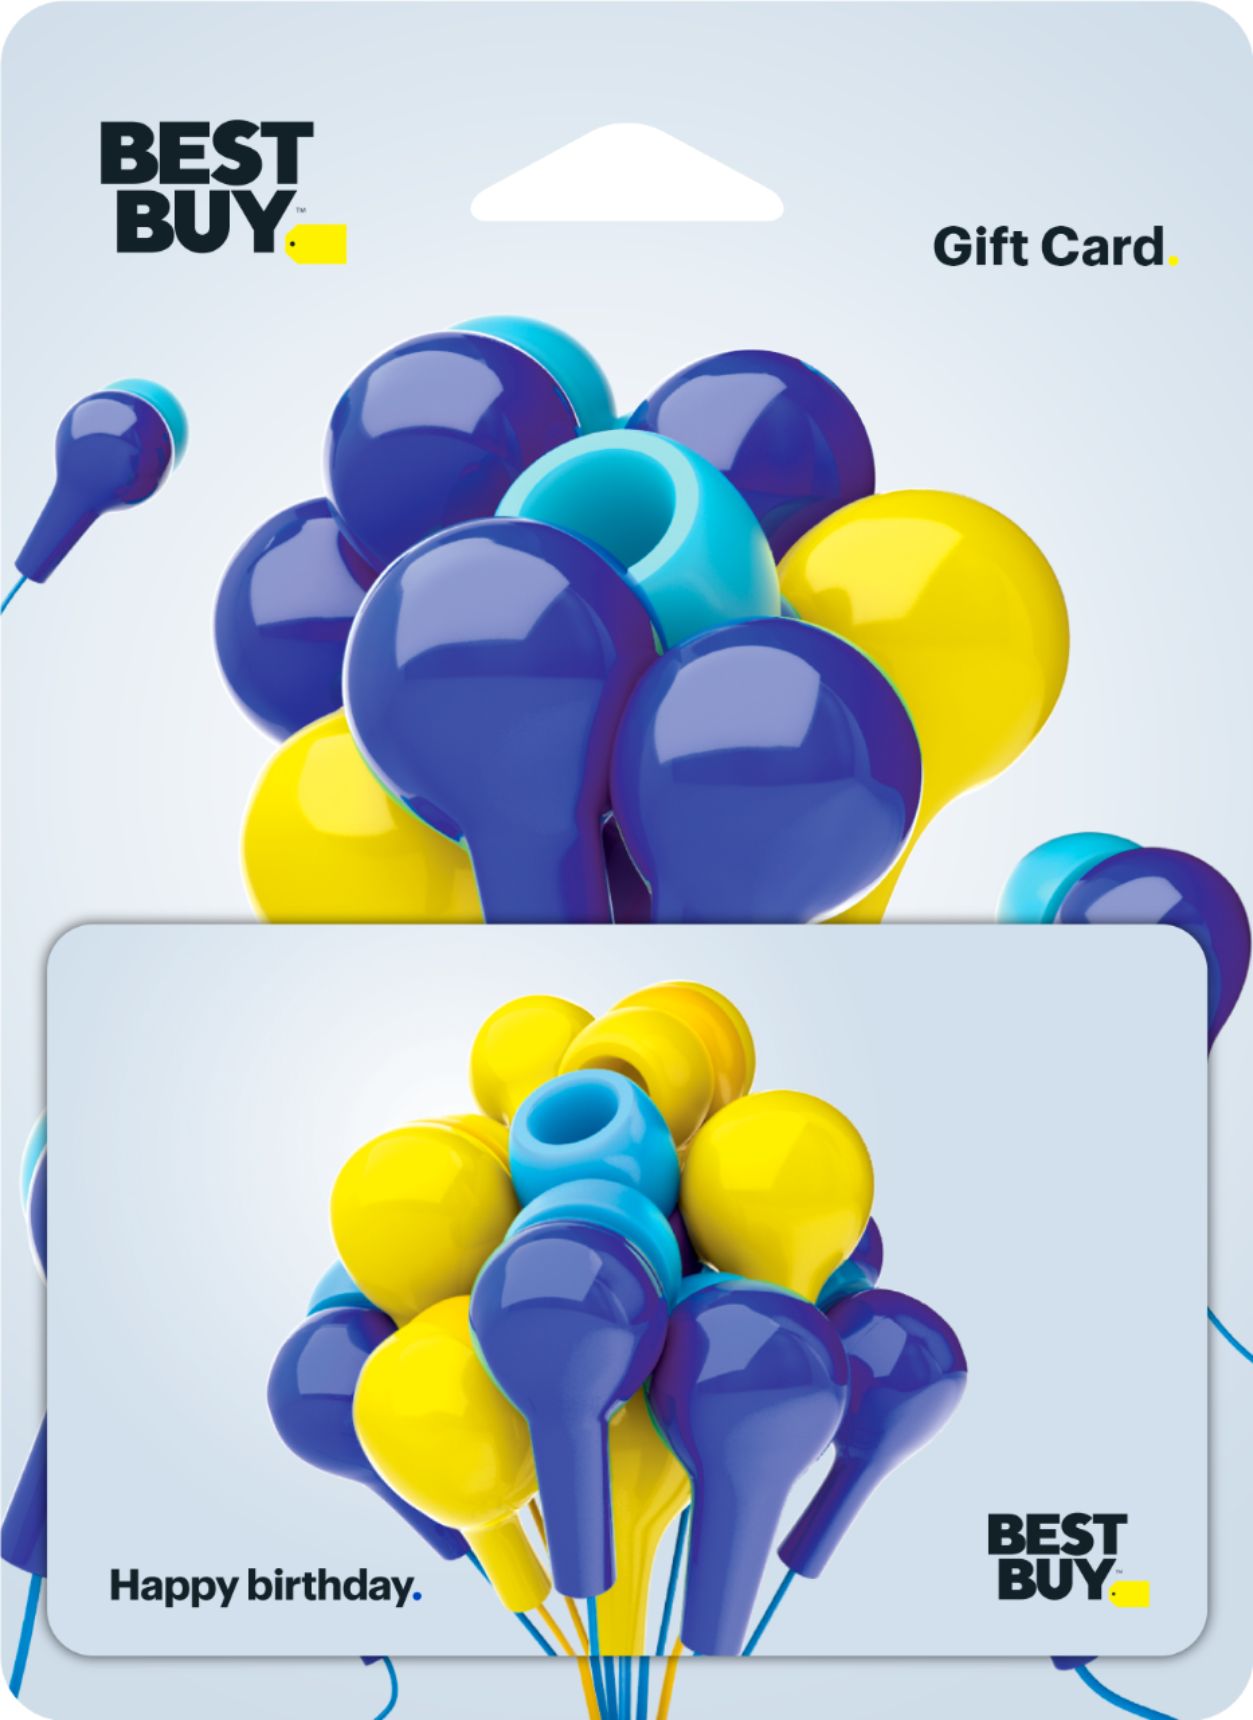 $25 Gift Card [Digital]  $25 DDP - Best Buy